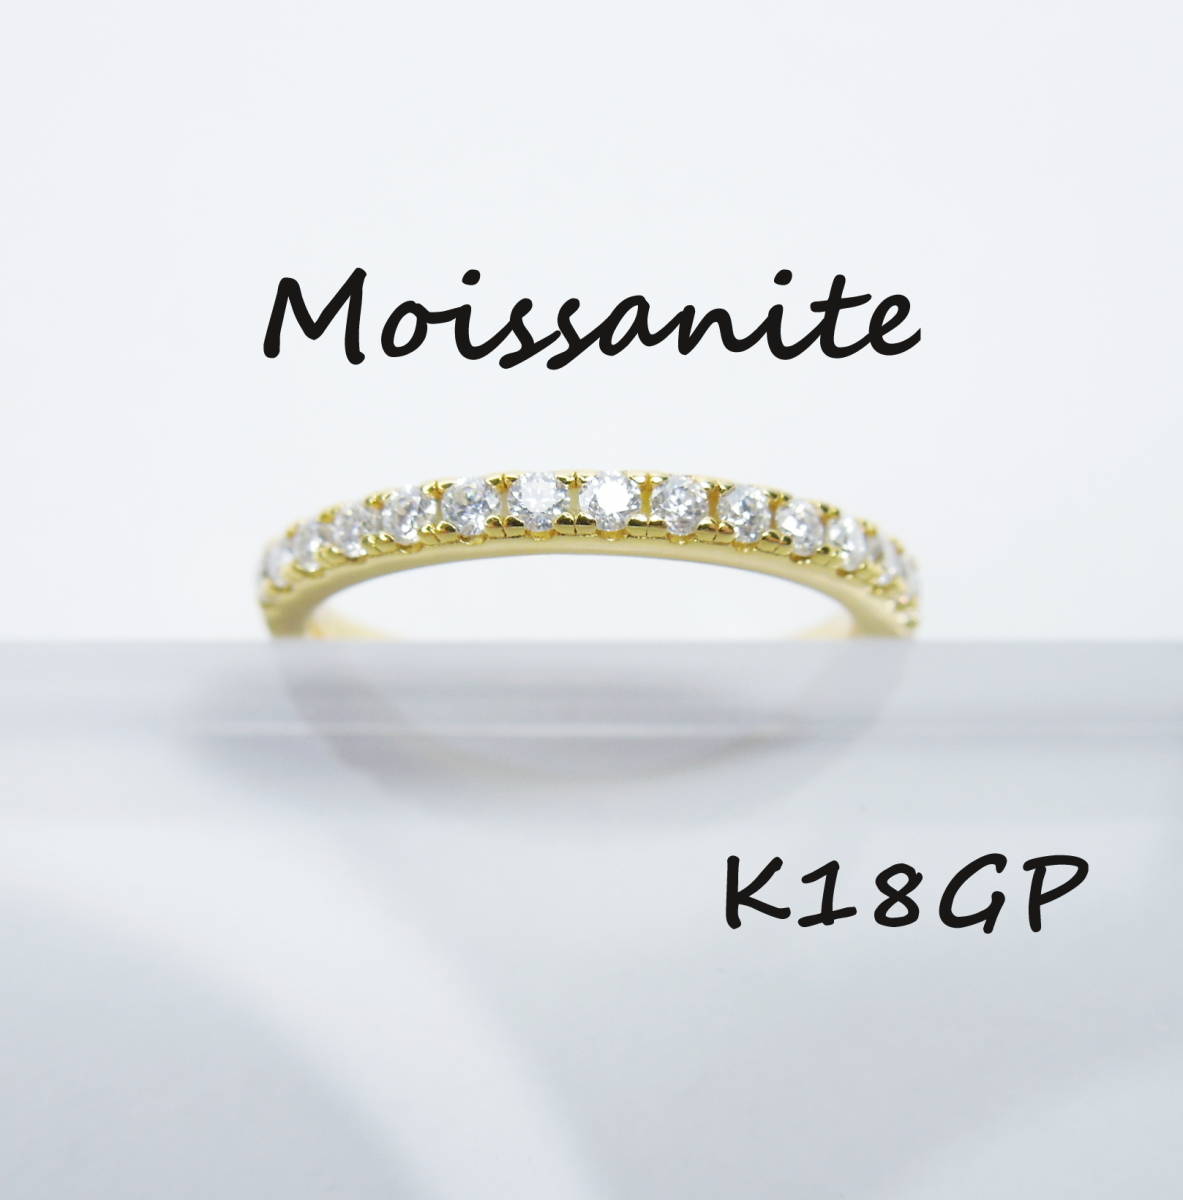 約8.25号 K18GP ゴールド モアサナイト ハーフエタニティリング 指輪 モアッサナイト 新品 未使用 silver925 シルバー 人工ダイヤモンド